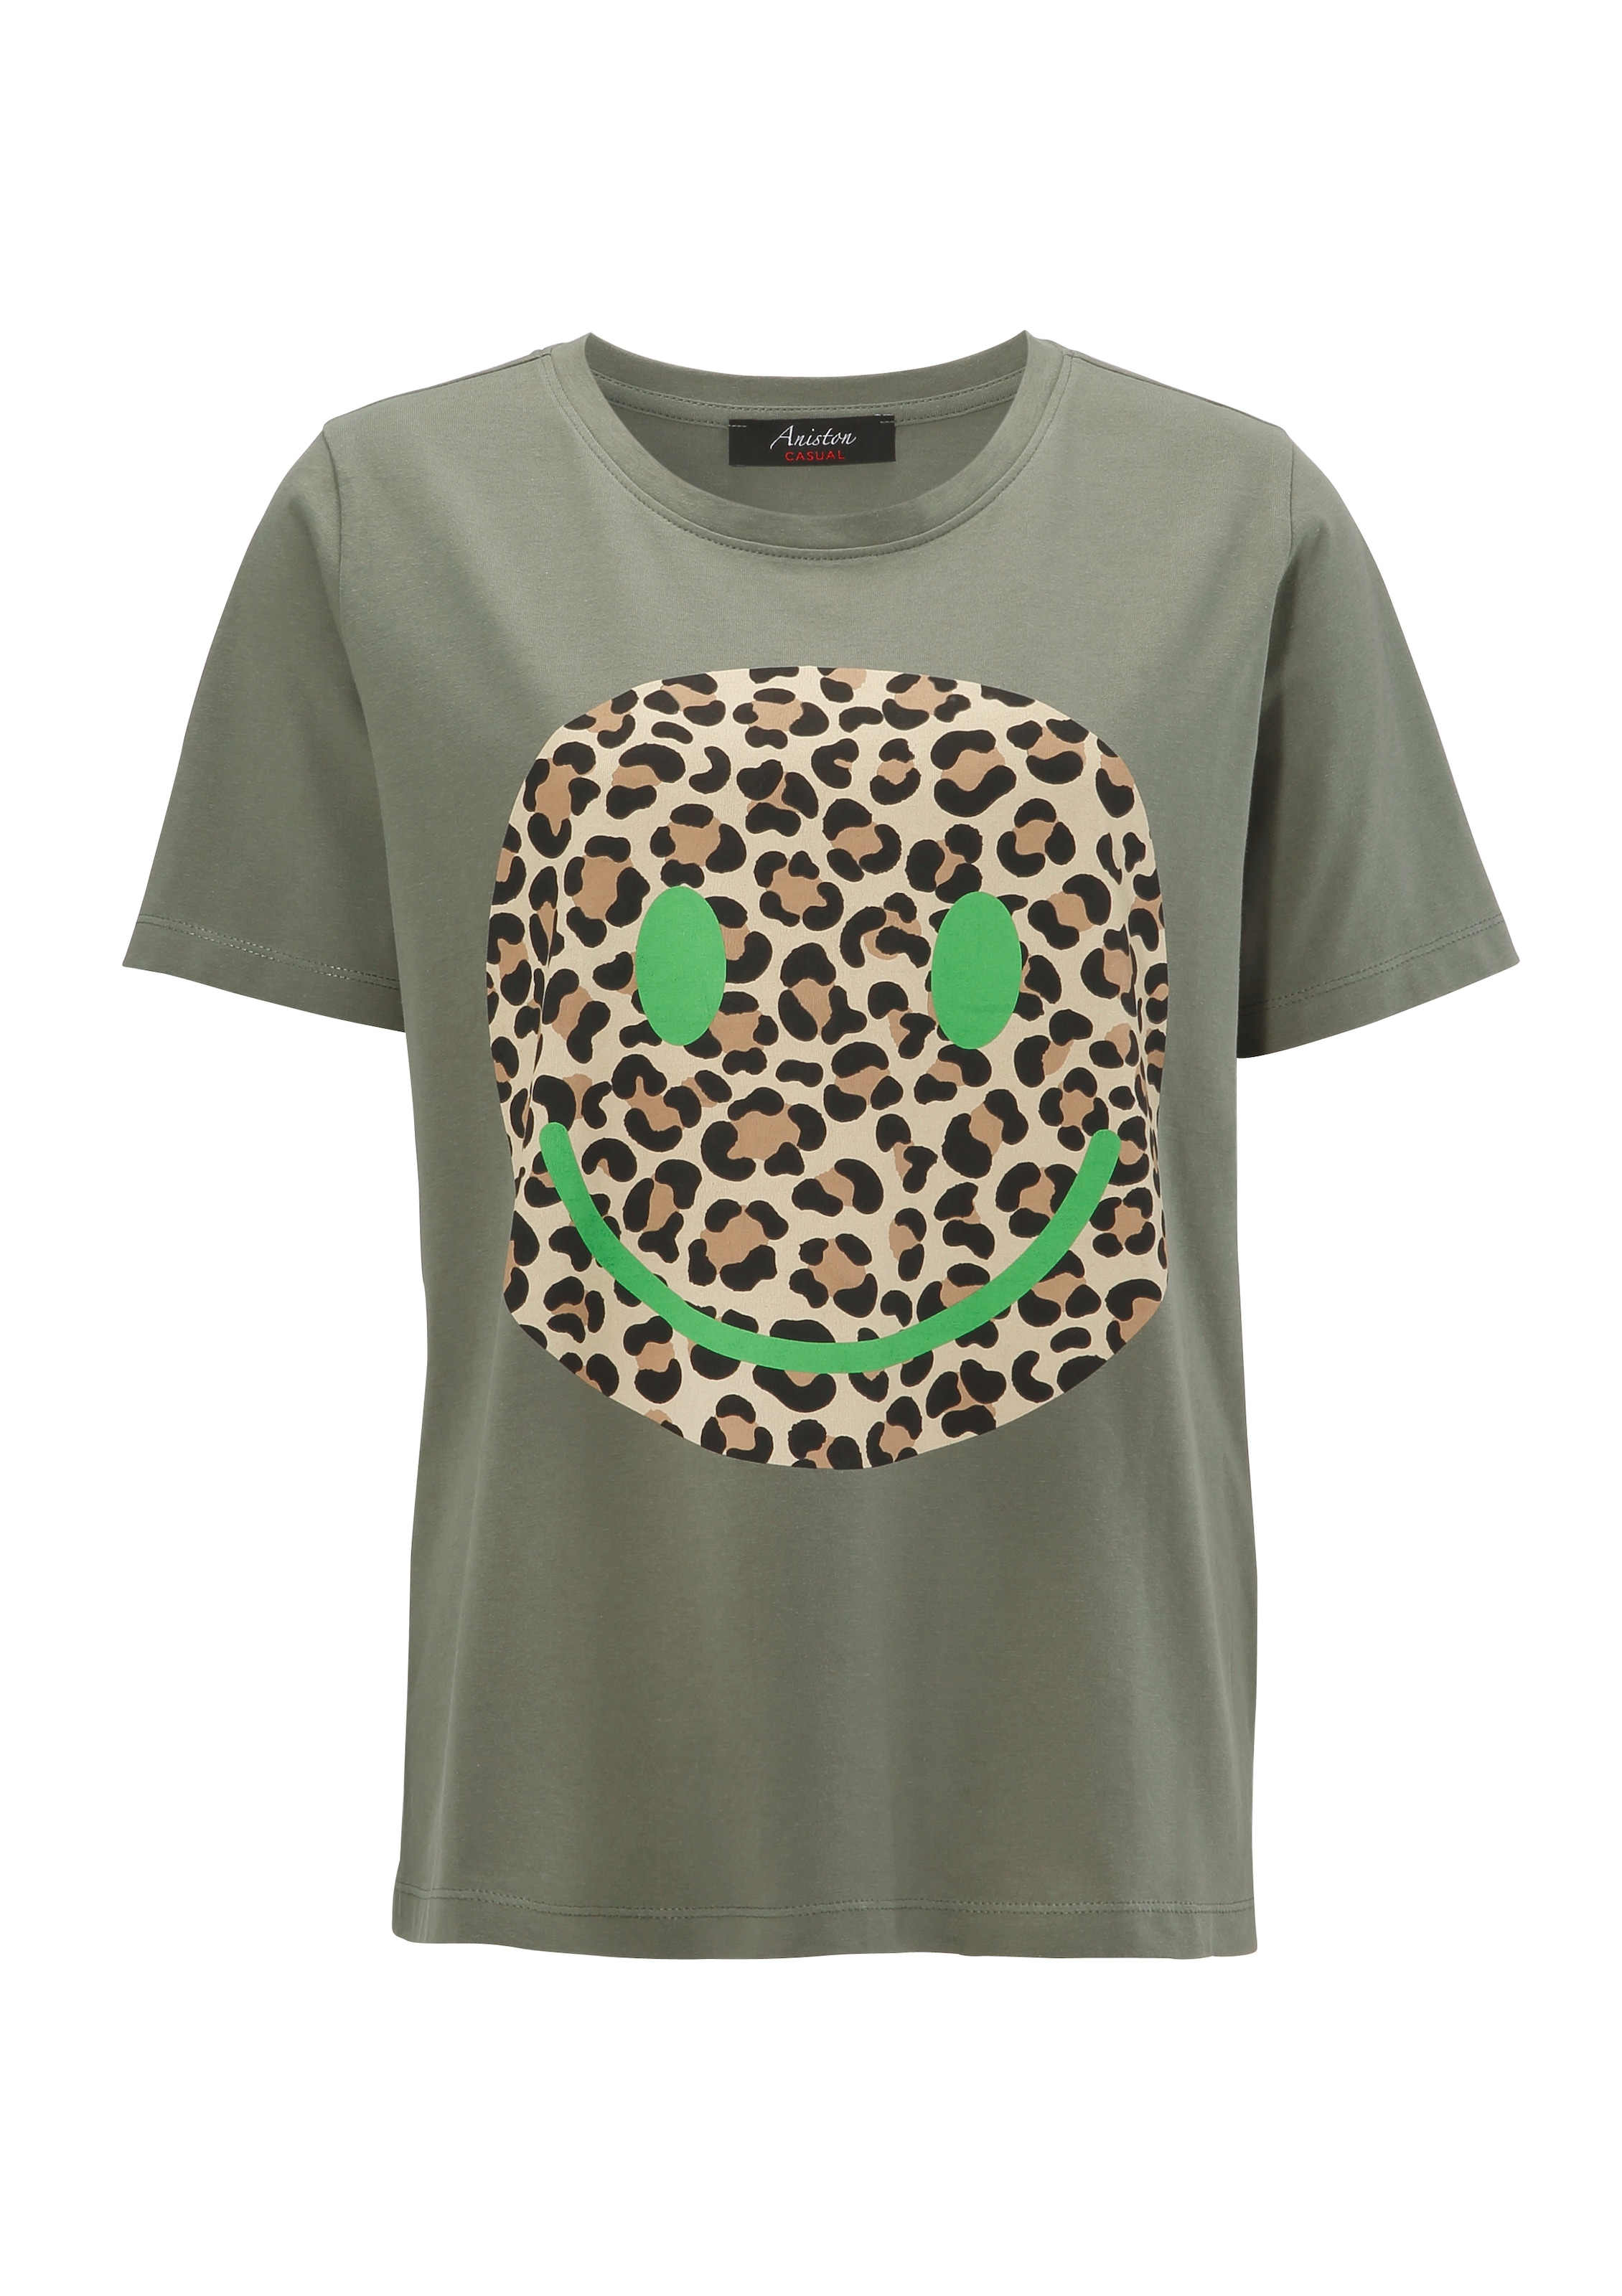 Smiley-Frontprint T-Shirt, im Animal-Look CASUAL ♕ Aniston kaufen mit versandkostenfrei